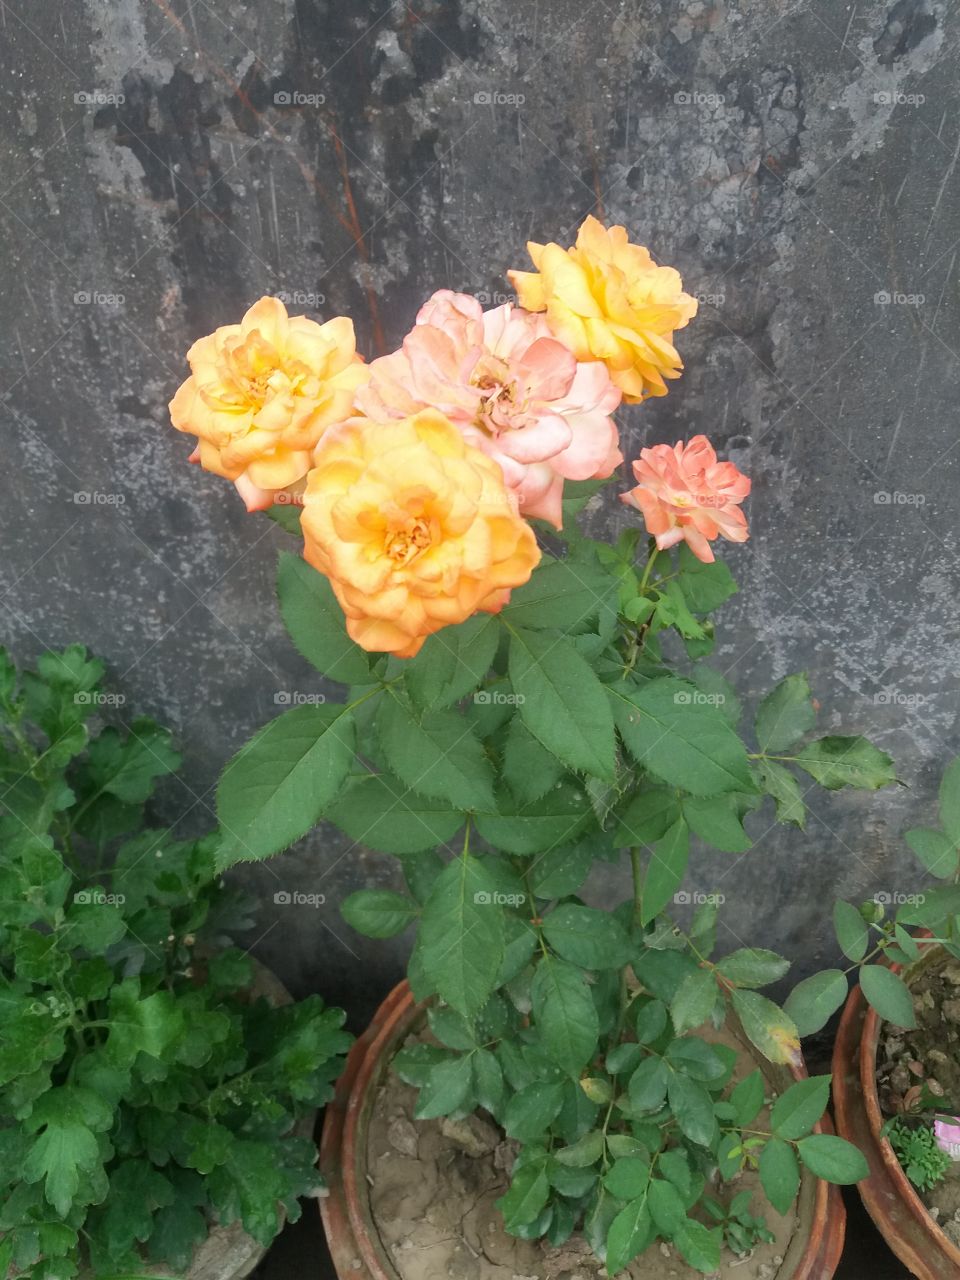 flower of my garden